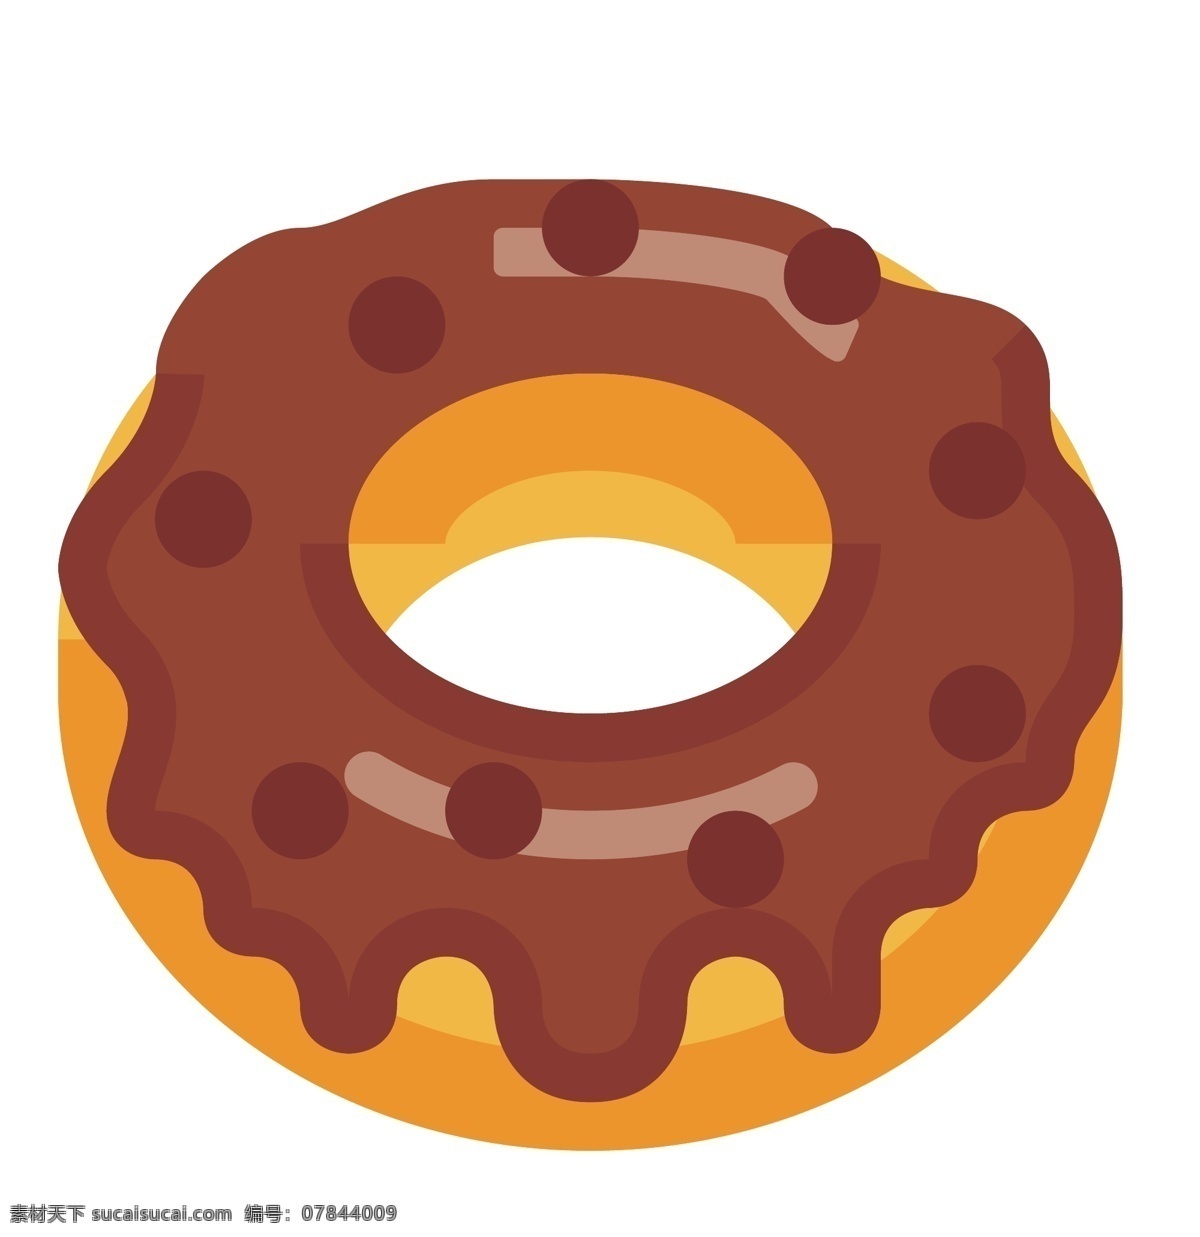 巧克力 圆形 甜甜 圈 插图 精美的甜甜圈 饼干甜甜圈 巧克力甜甜圈 好吃的甜甜圈 一个甜甜圈 圆形甜甜圈